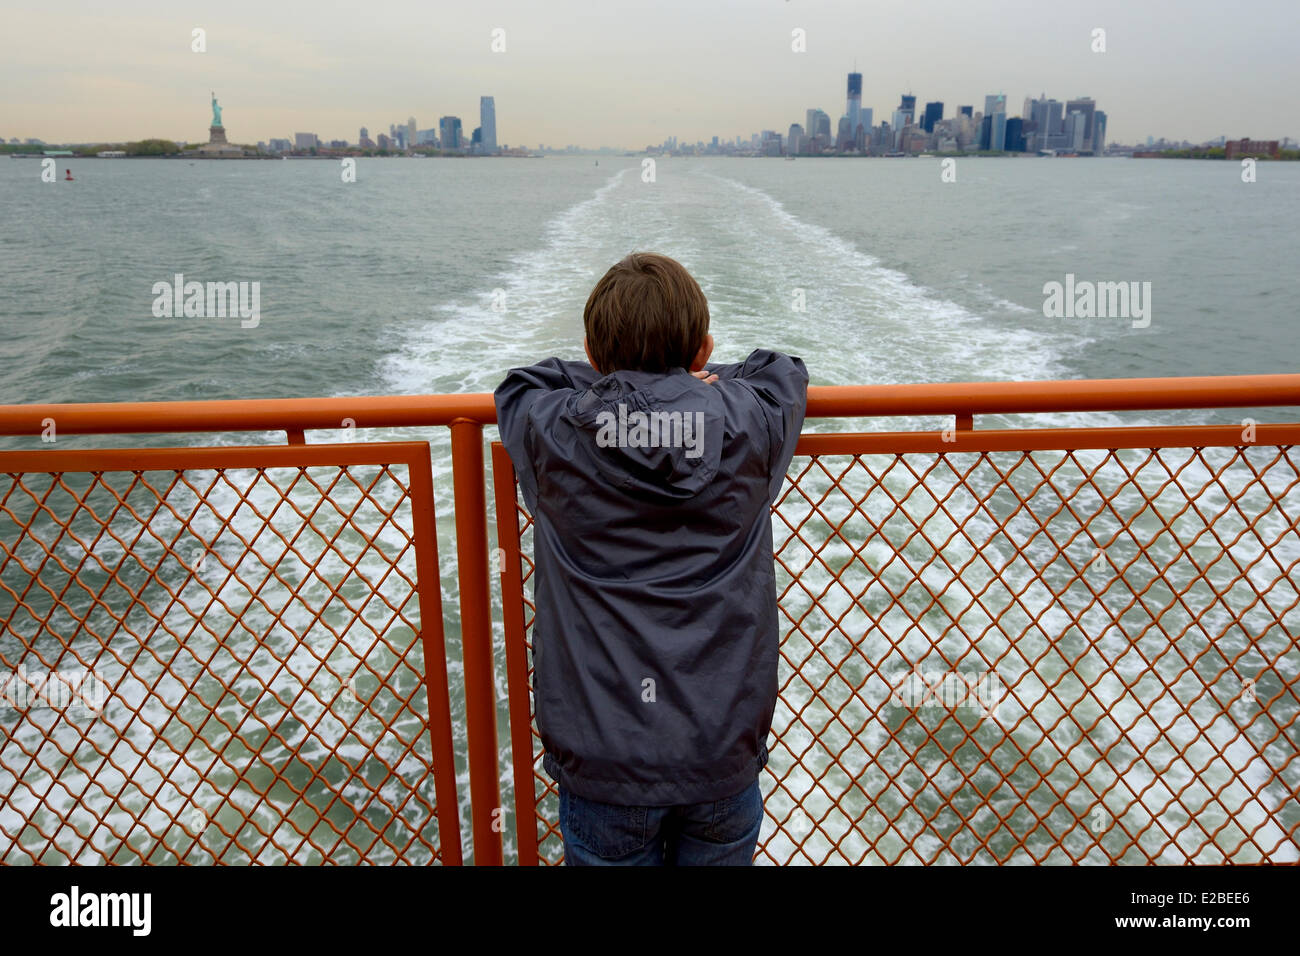 United States, New York City, pointe sud de Manhattan, quartier des bâtiments, Statue de la liberté et One World Trade Center (WTC 1) vue depuis le ferry de Staten Island Banque D'Images